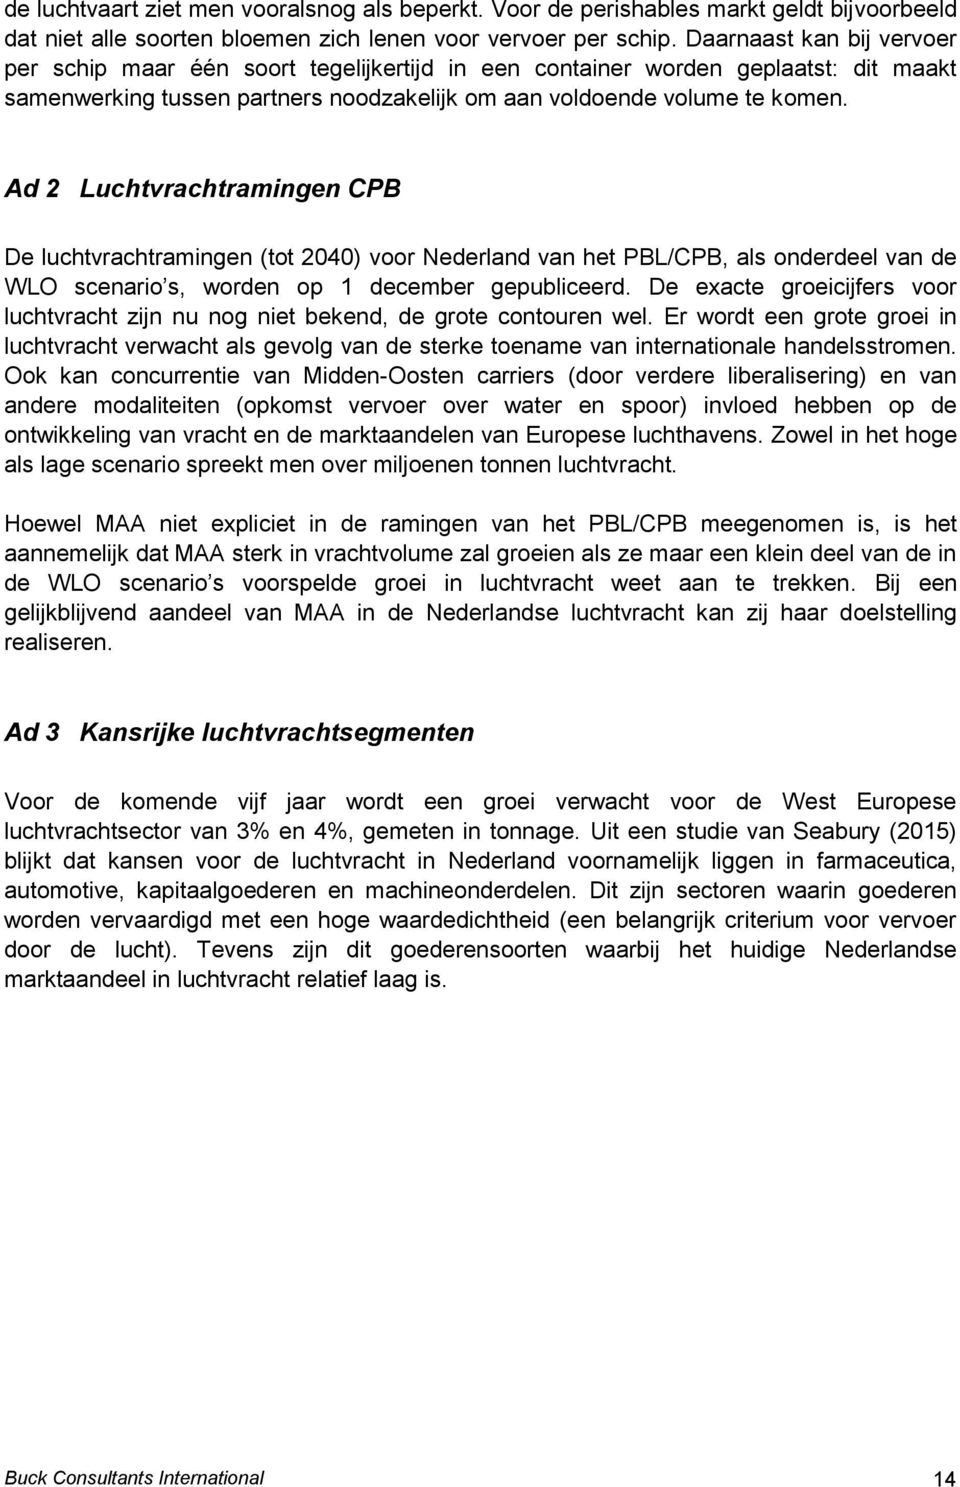 Ad 2 Luchtvrachtramingen CPB De luchtvrachtramingen (tot 2040) voor Nederland van het PBL/CPB, als onderdeel van de WLO scenario s, worden op 1 december gepubliceerd.